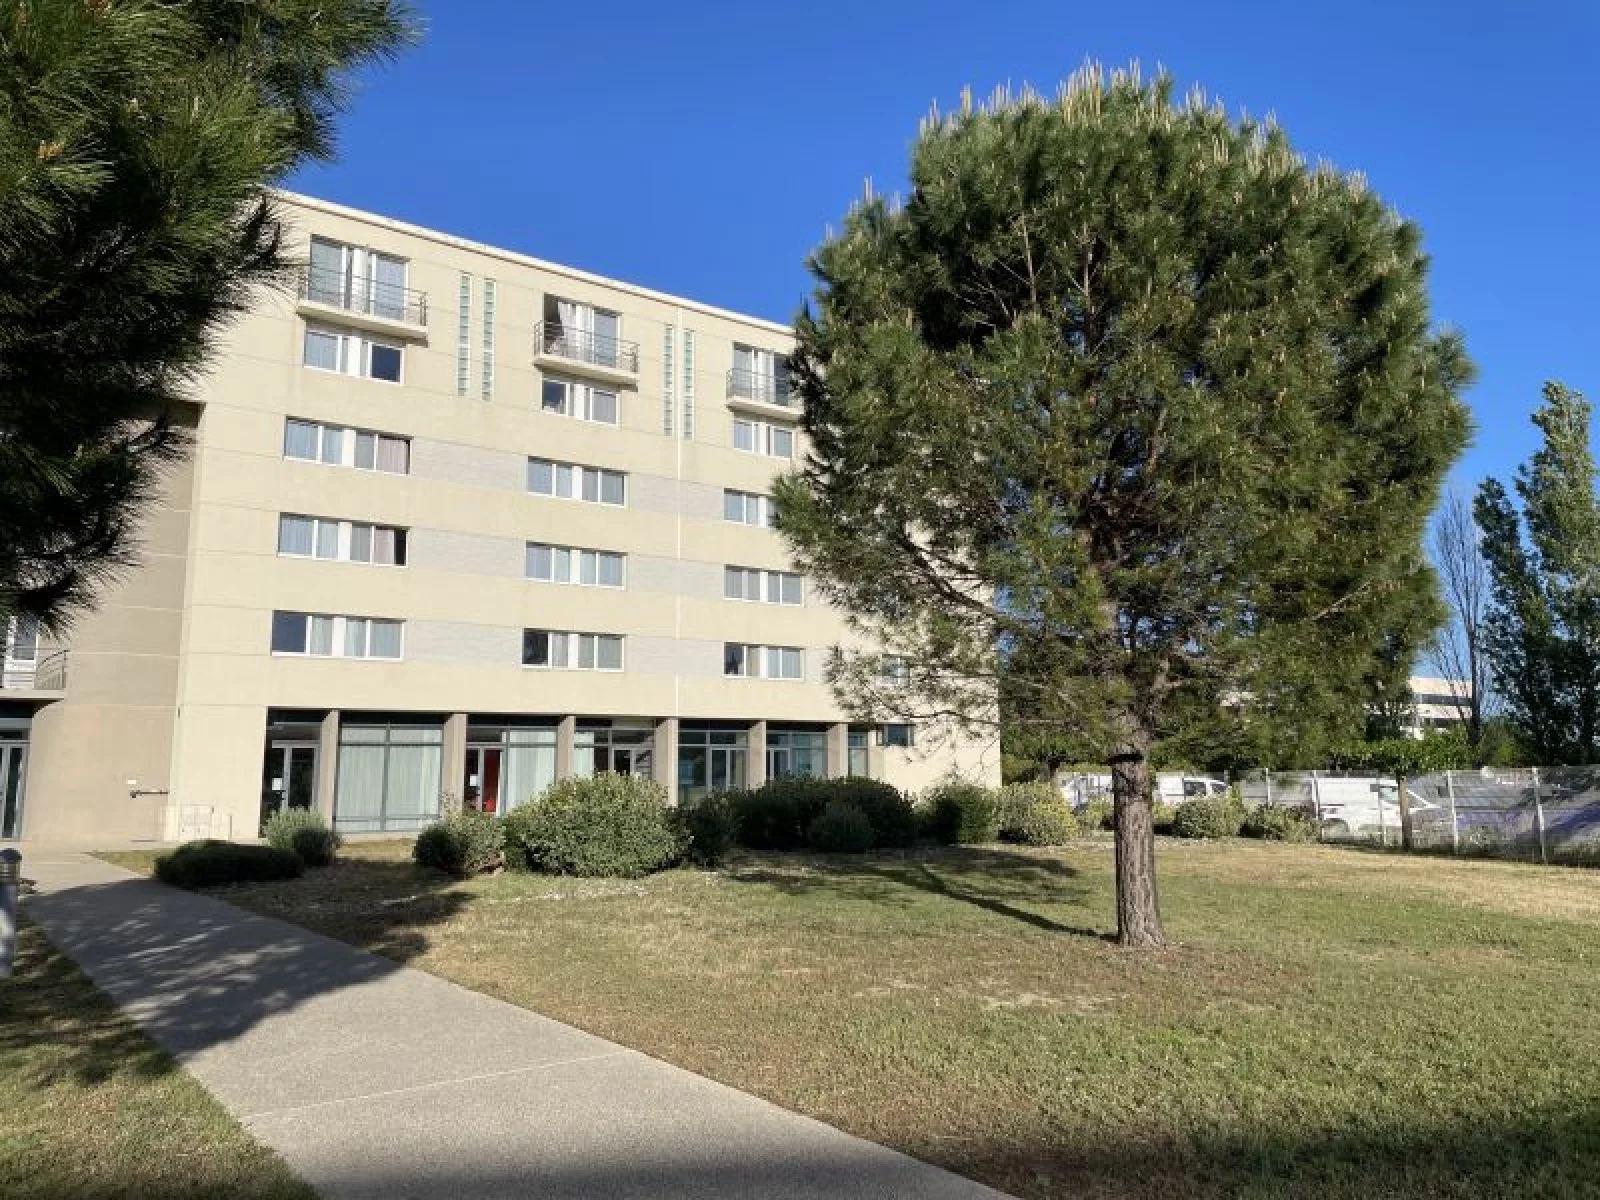 Location appartement meublé 2 pièces 28m² (Avignon - gare TGV)